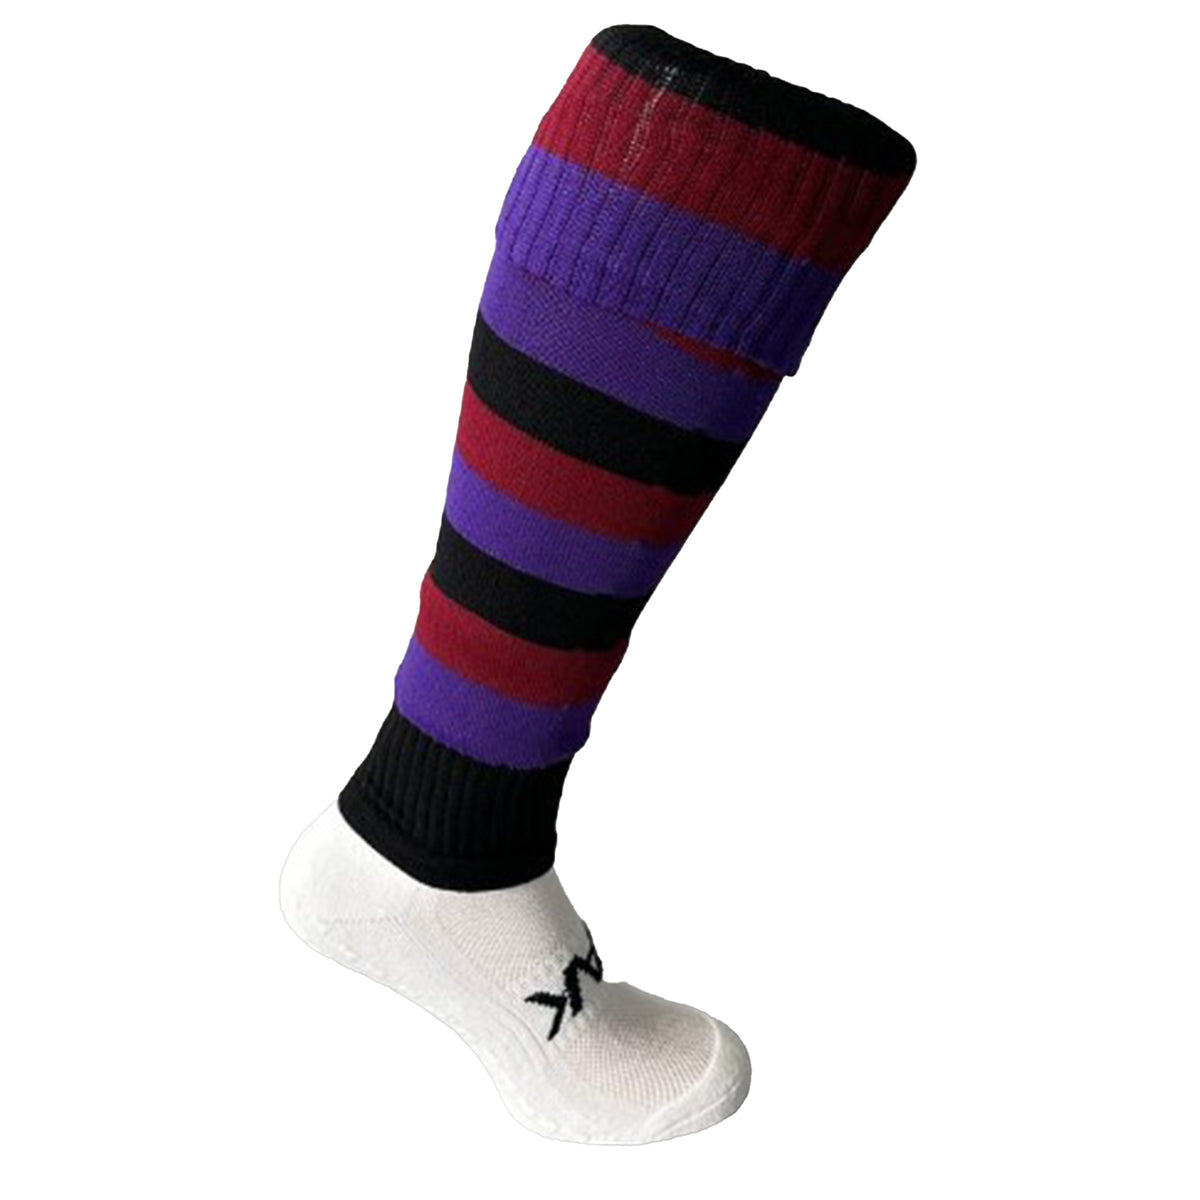 Maidenhead RFC Footless Socks - Large